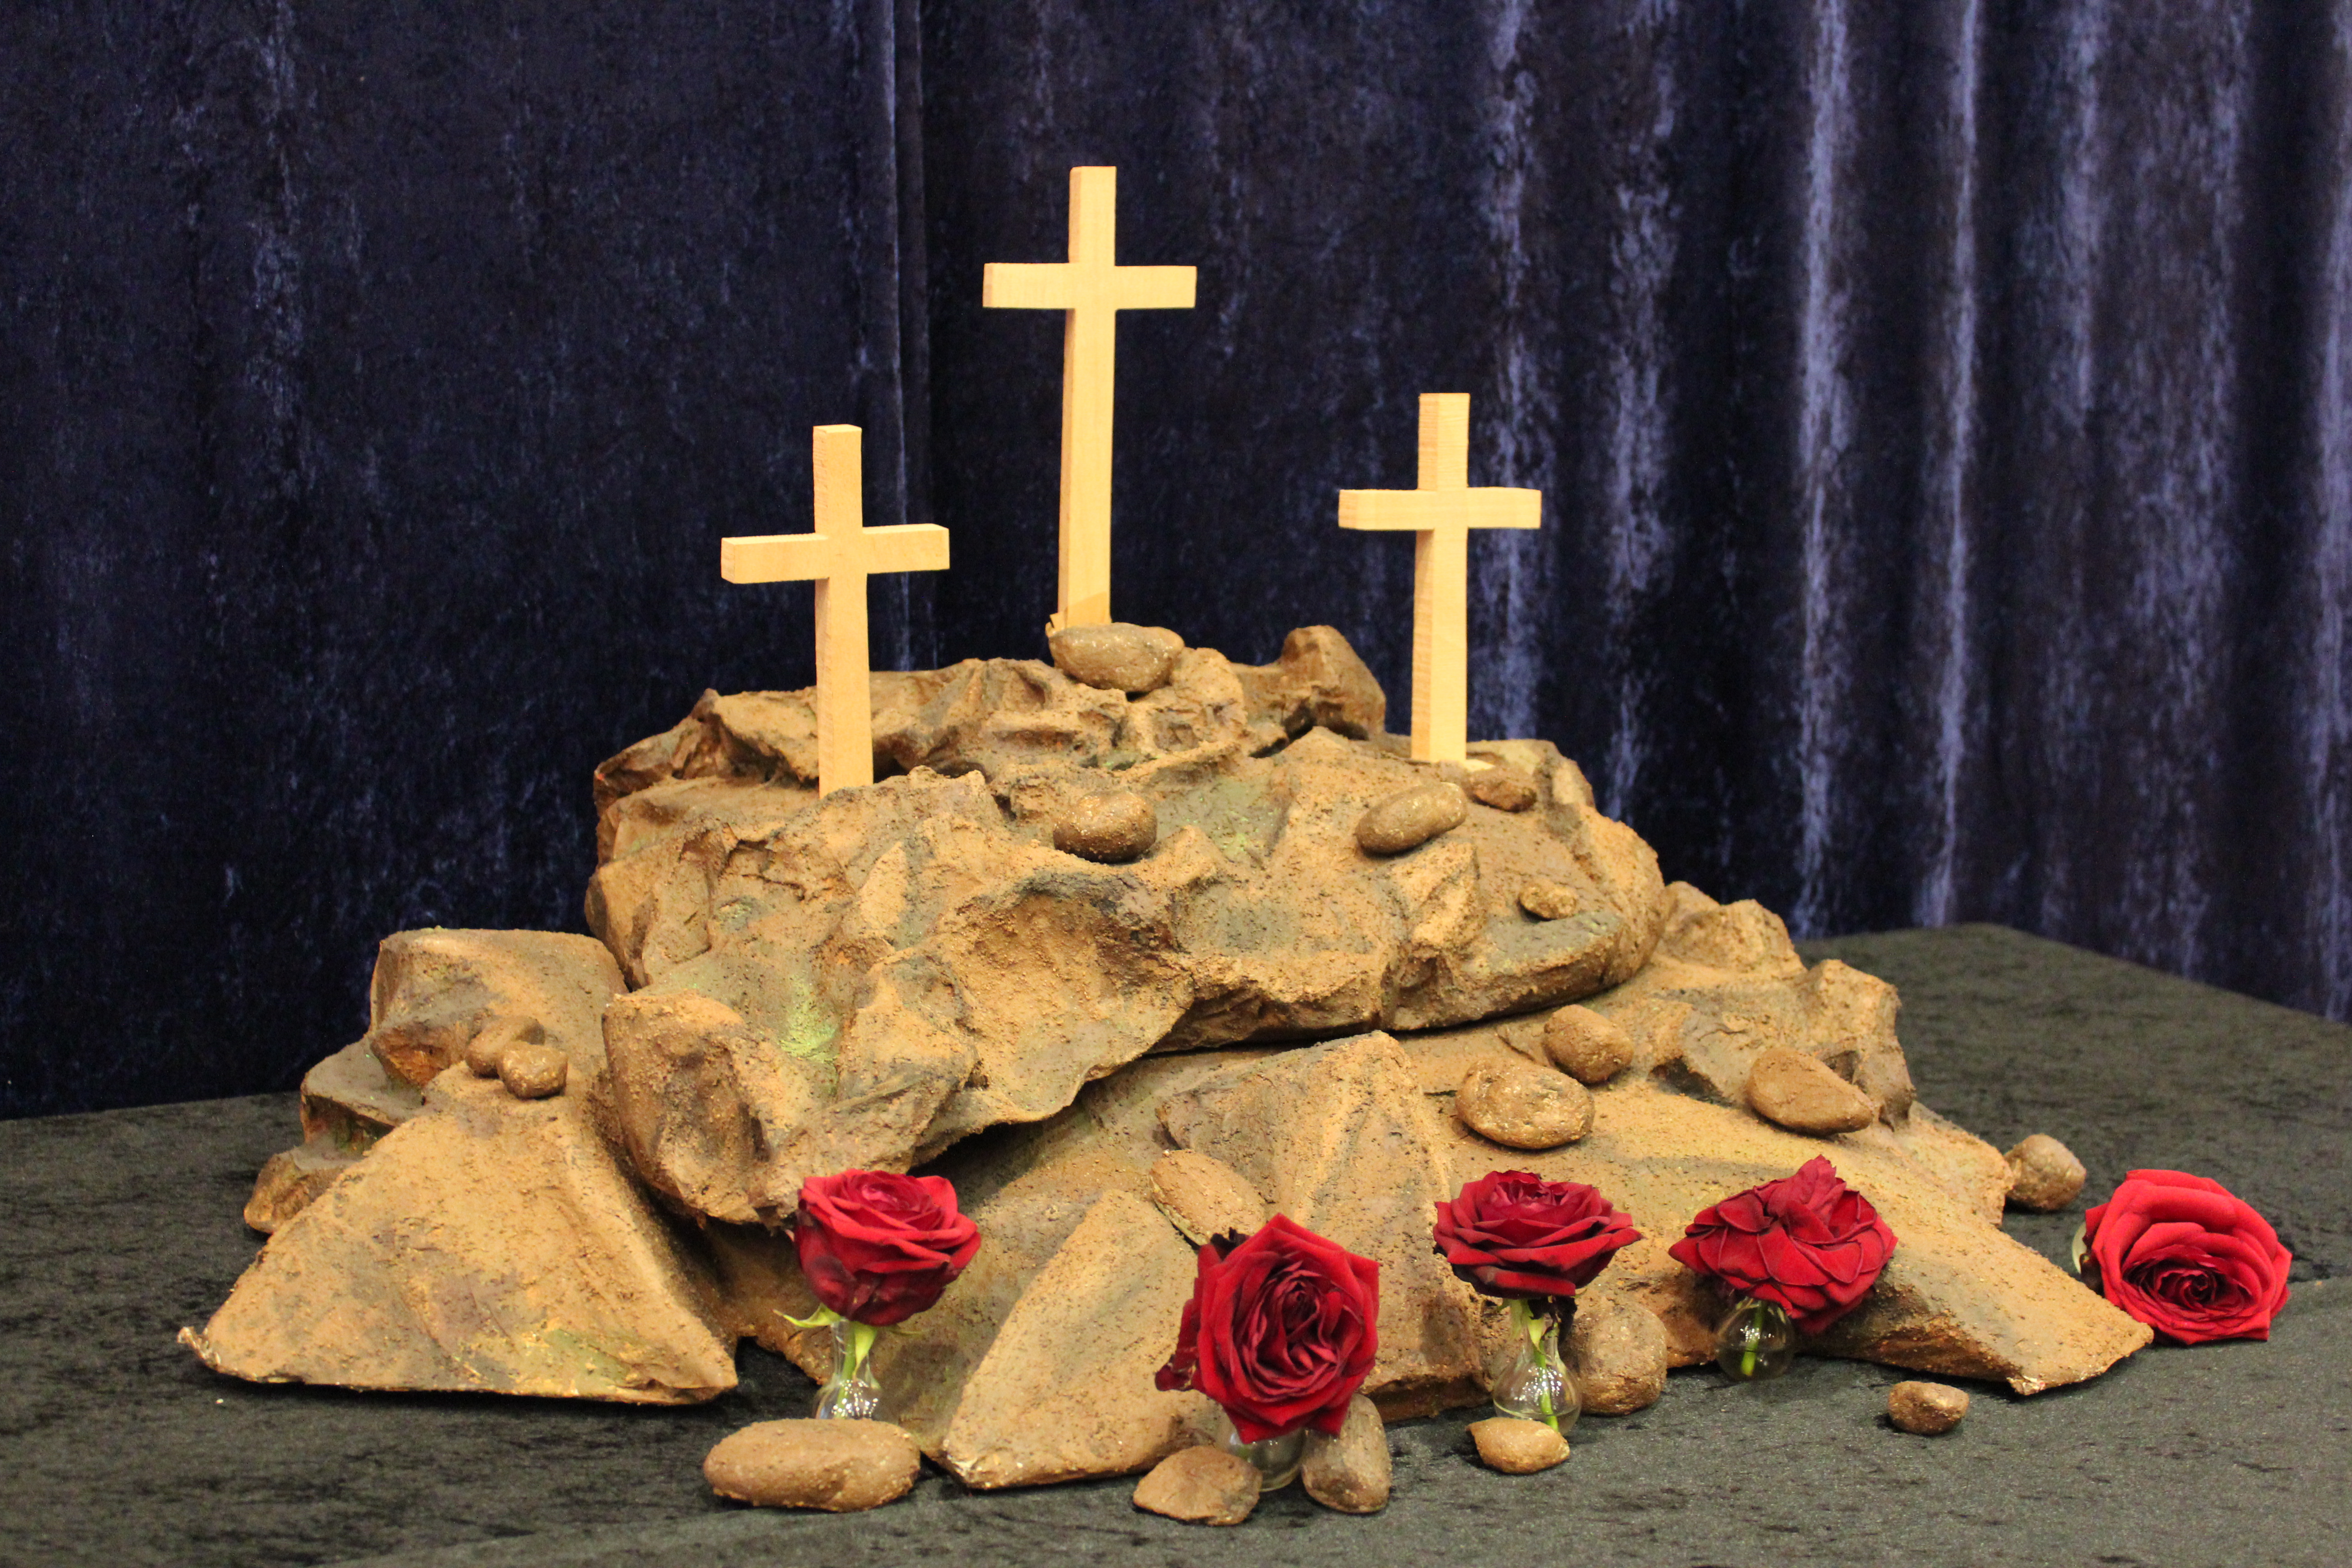 Pääsiäisalttari. Kolme ristiä kivikummun päällä ja edessä punaisia ruusuja.